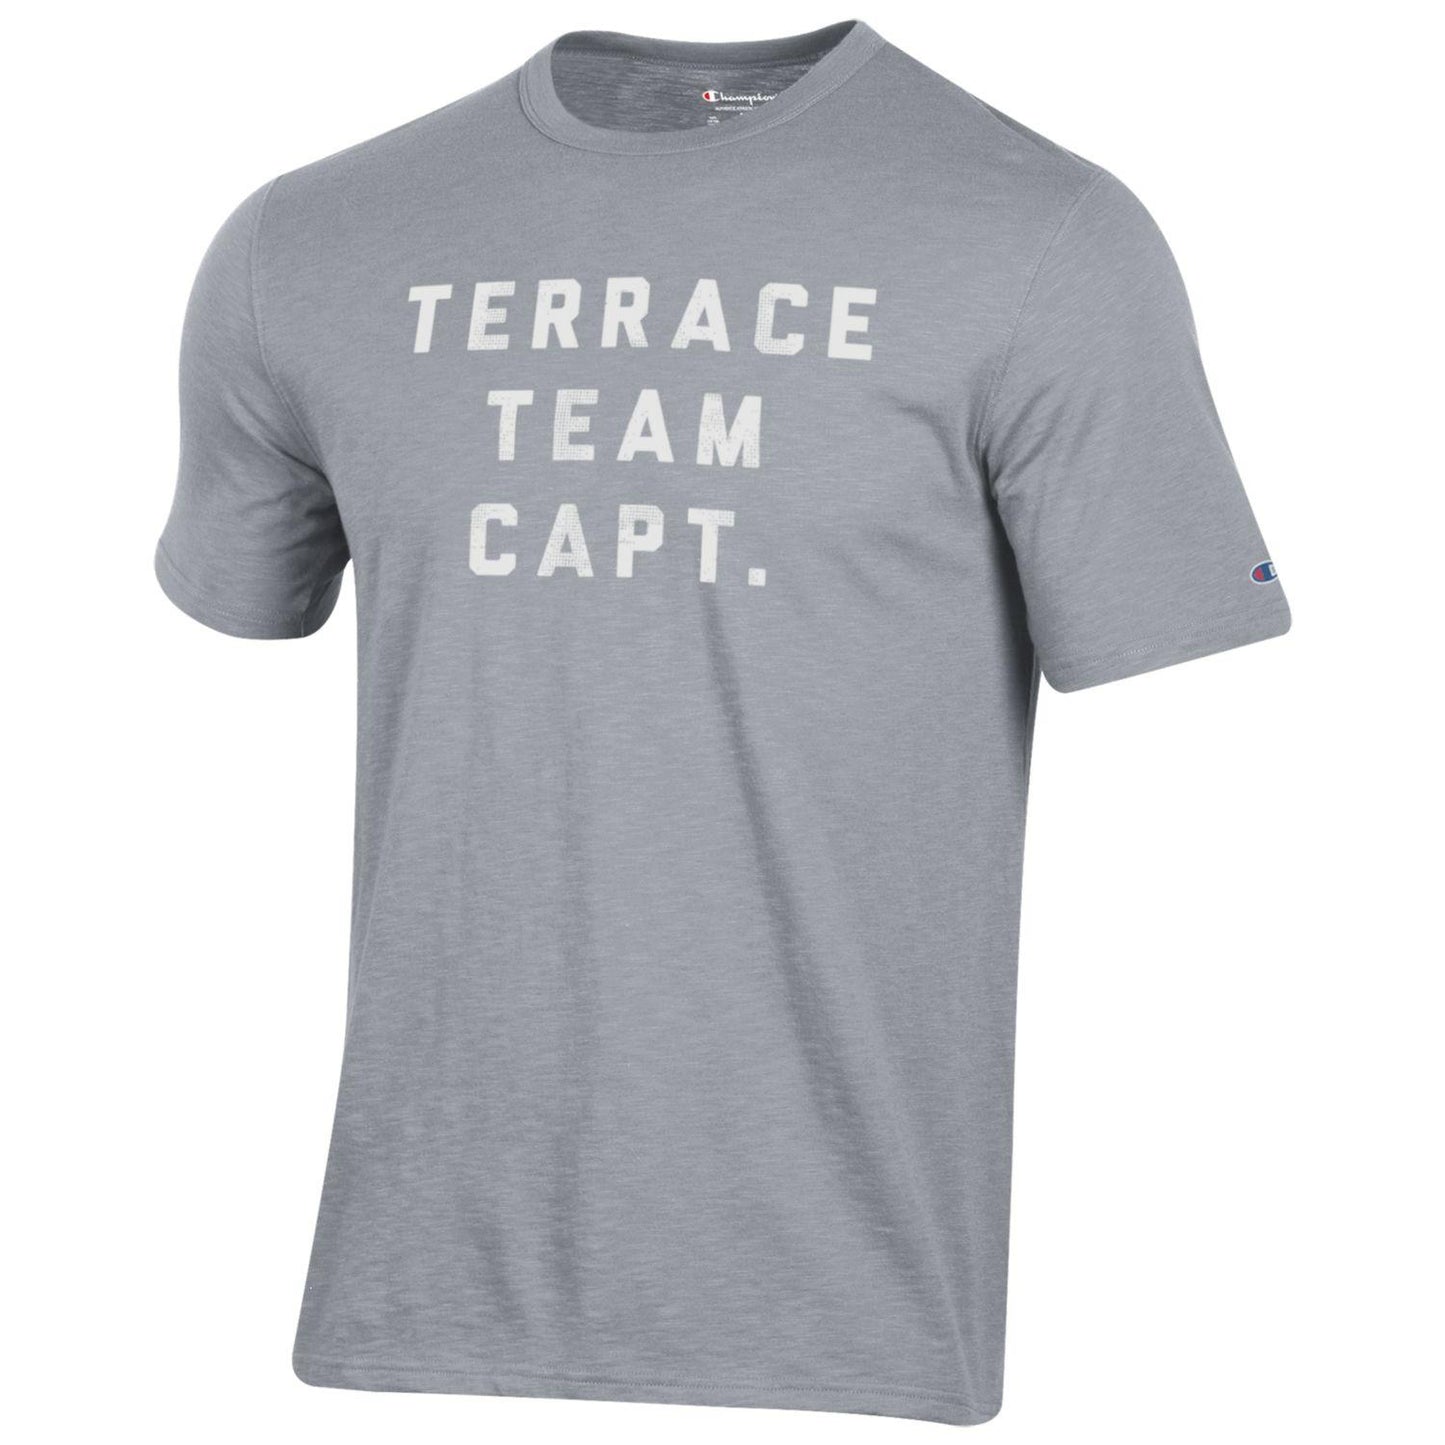 Terrace Team Capt. Short Sleeve Tee